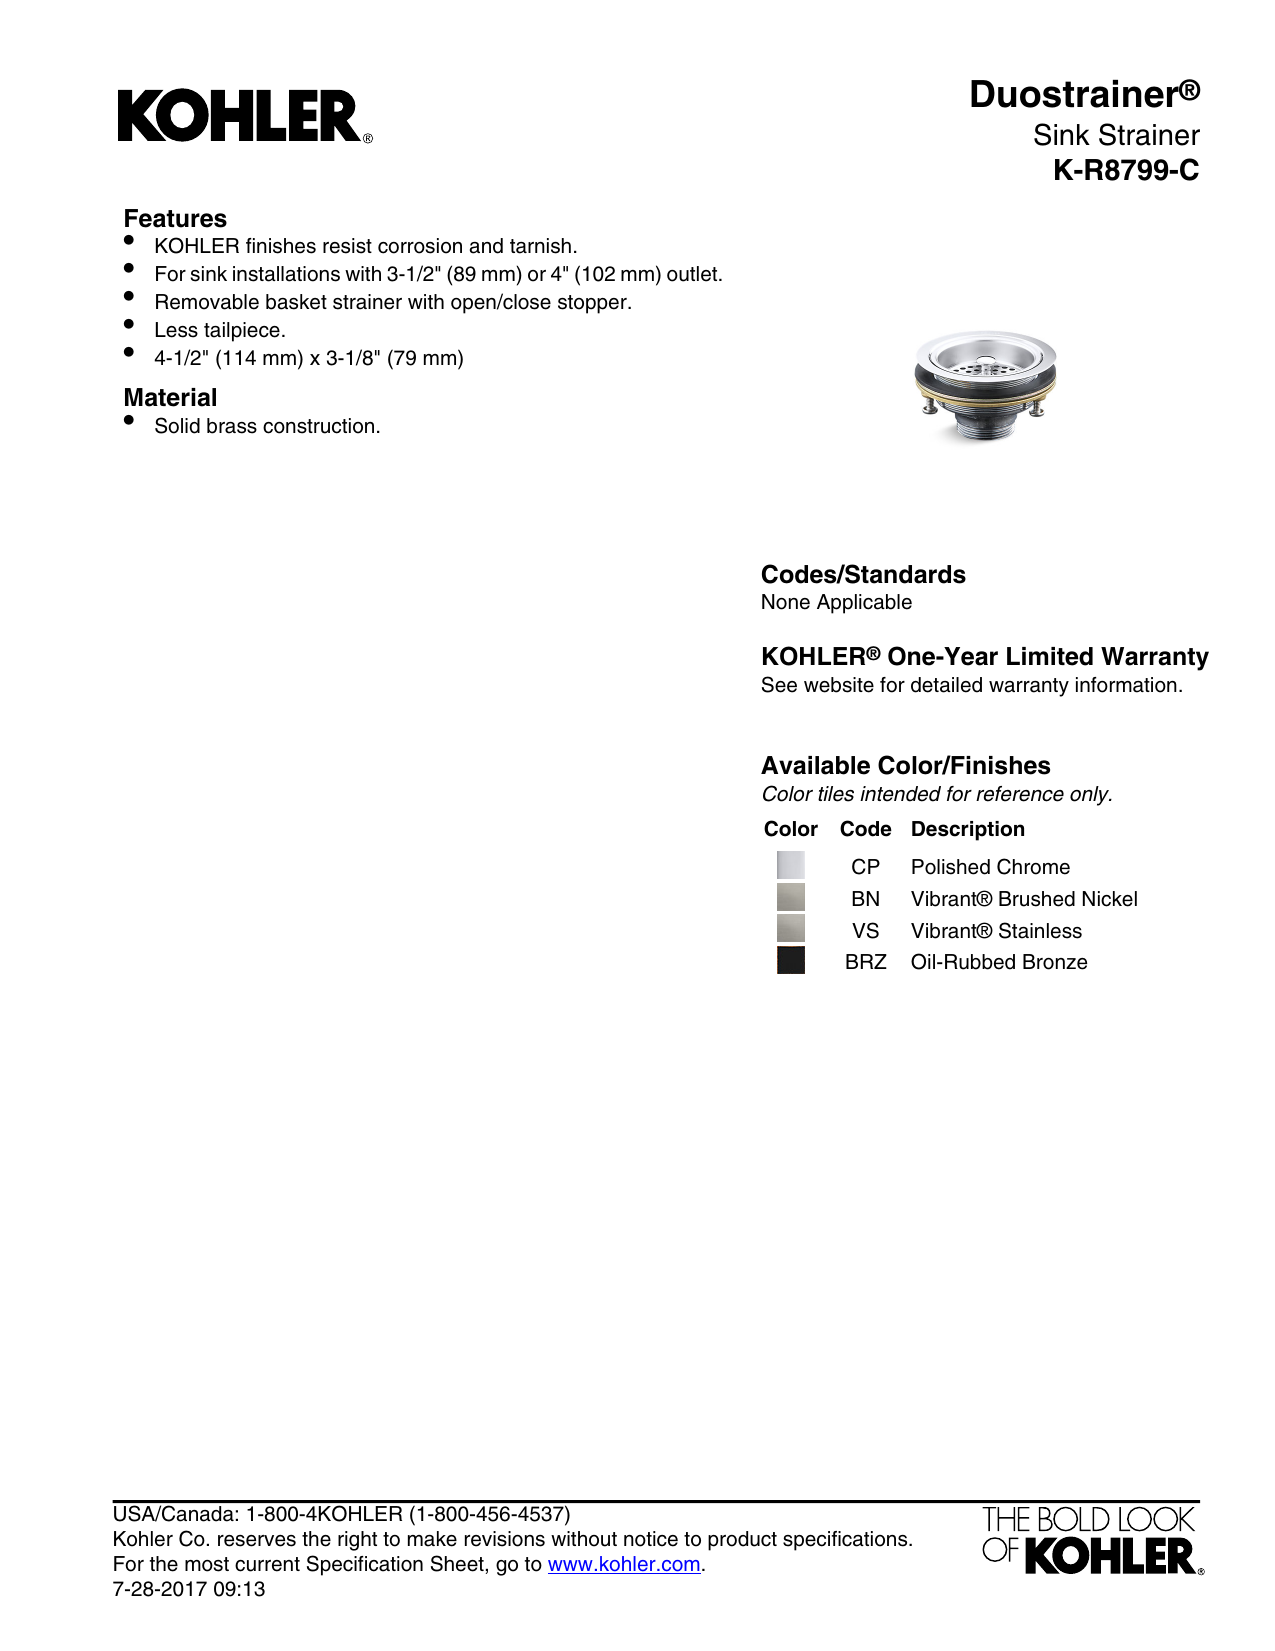 KOHLER K-R8799-C-VS Duostrainer 4-1/2 in. Sink Strainer in Vibrant 